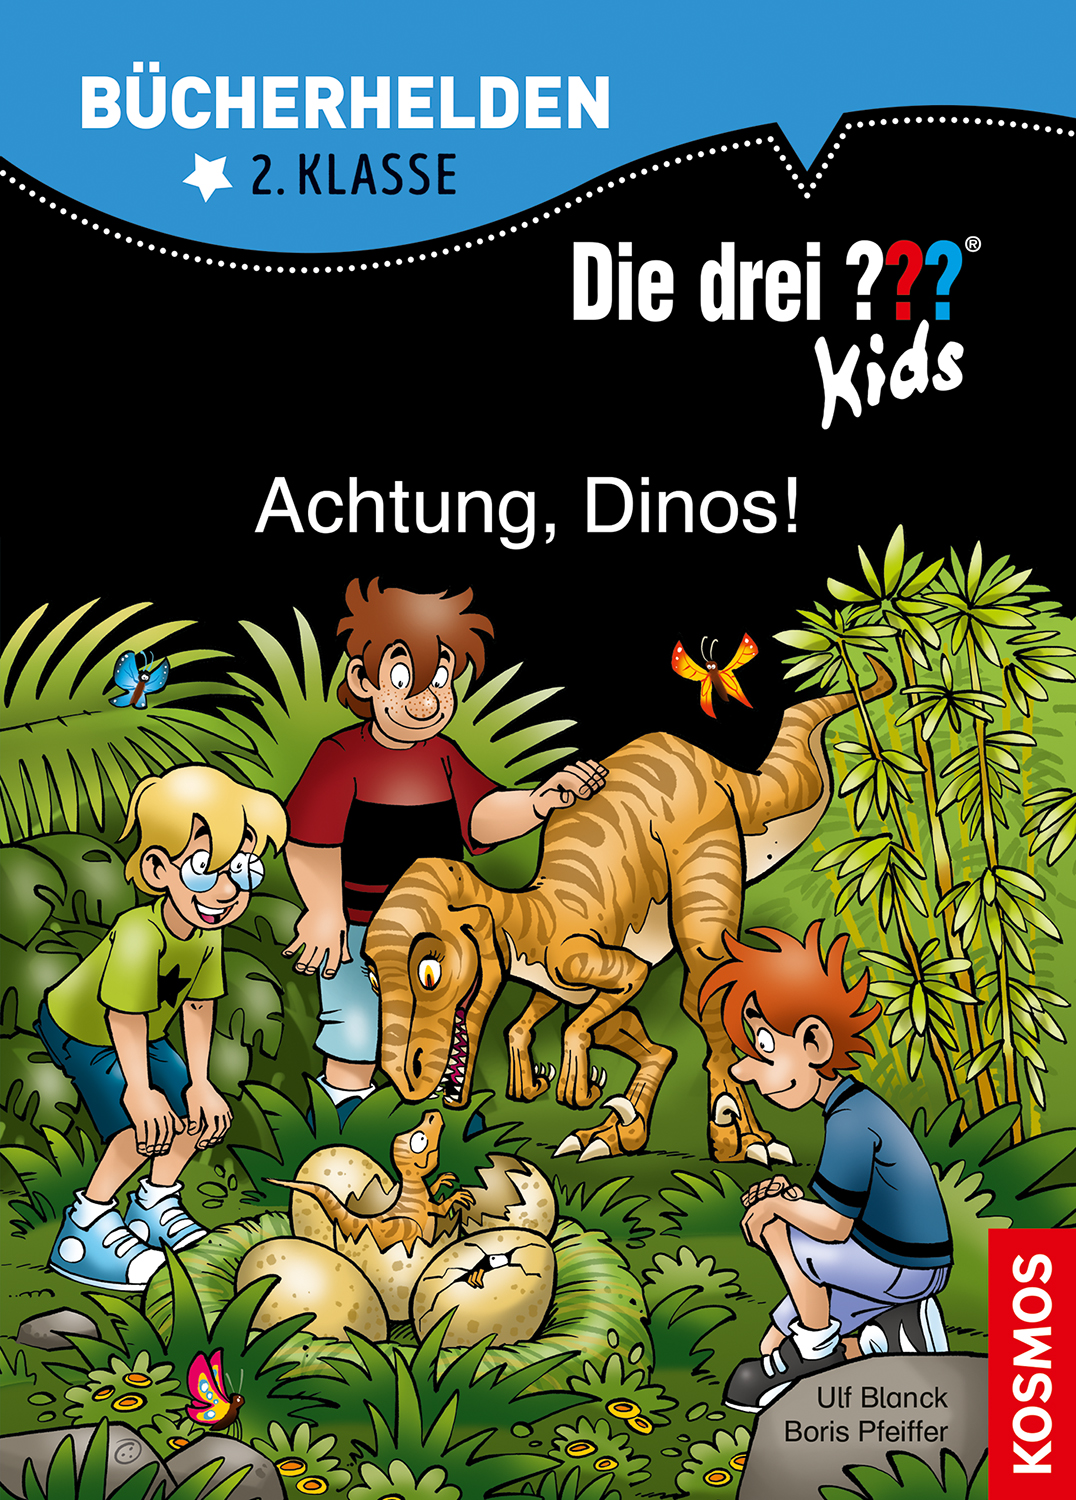 Die Drei ??? (Fragezeichen) Kids, Buch-Band 500: Die drei ??? Kids, Bücherhelden 2. Klasse, Achtung, Dinos!